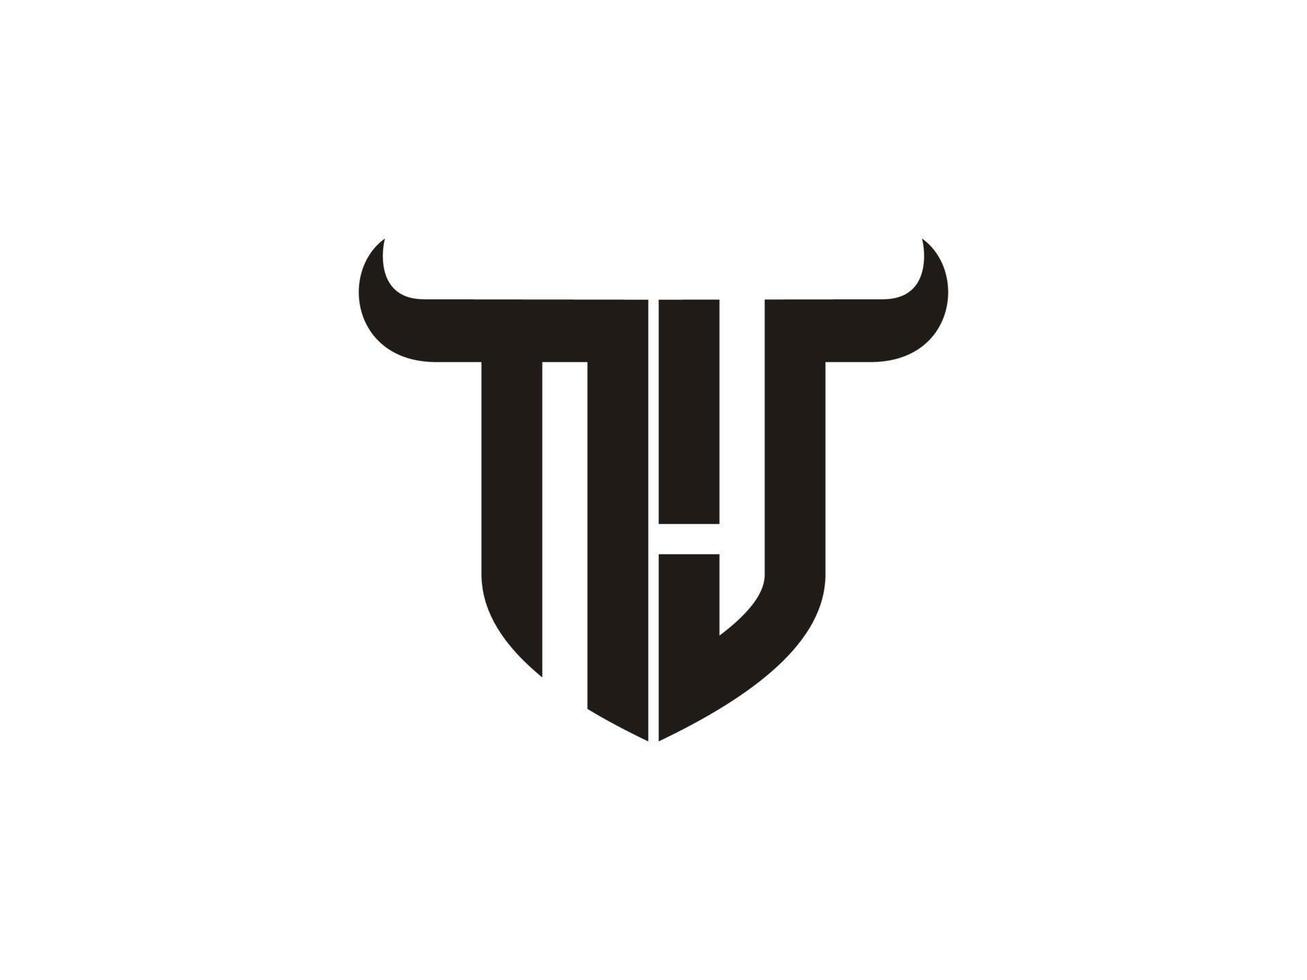 création initiale du logo nj bull. vecteur